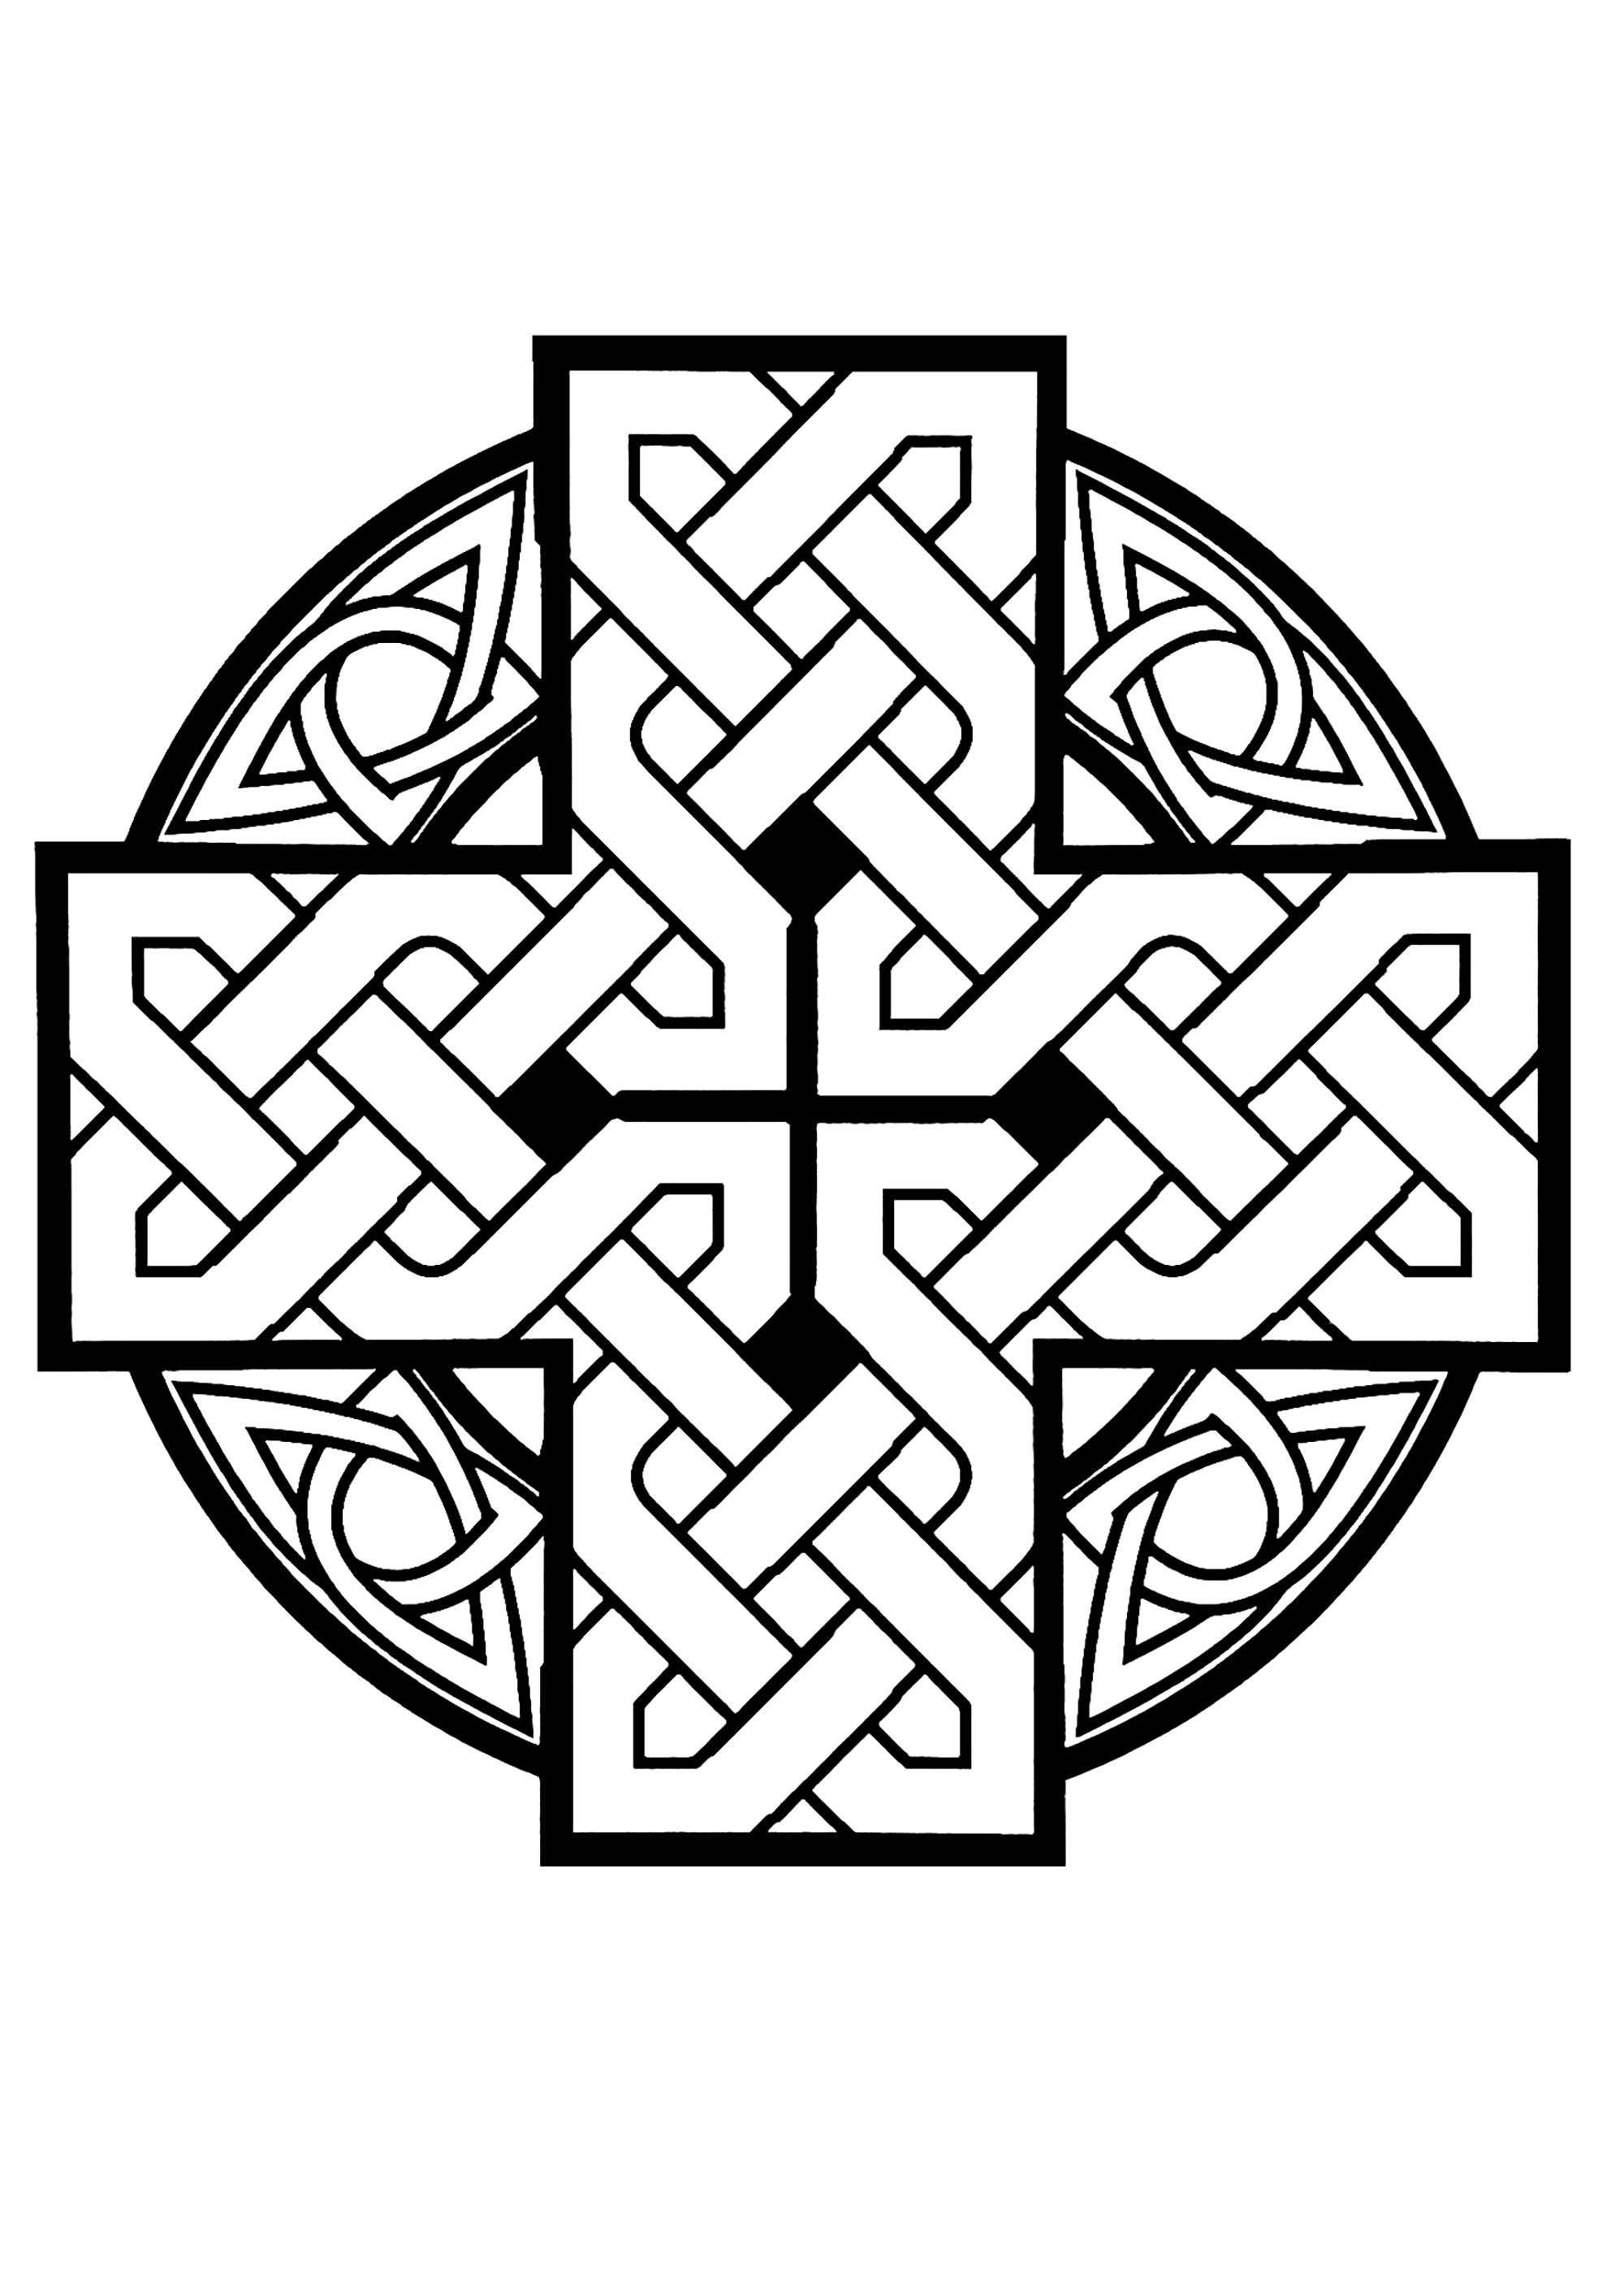 Noeud celtique simple. Les nœuds celtiques sont des boucles complètes qui n'ont ni début ni fin et représentent l'éternité, la loyauté, la foi, l'amitié ou l'amour. Un seul tracé est utilisé dans chaque motif, ce qui symbolise la façon dont la vie et l'éternité sont interconnectées. Dans l'Art celtique, ces motifs complexes sont utilisés comme éléments décoratifs pour une variété d'articles, notamment des ensembles de bijoux, des assiettes, des tasses, des vêtements et même des couverts.